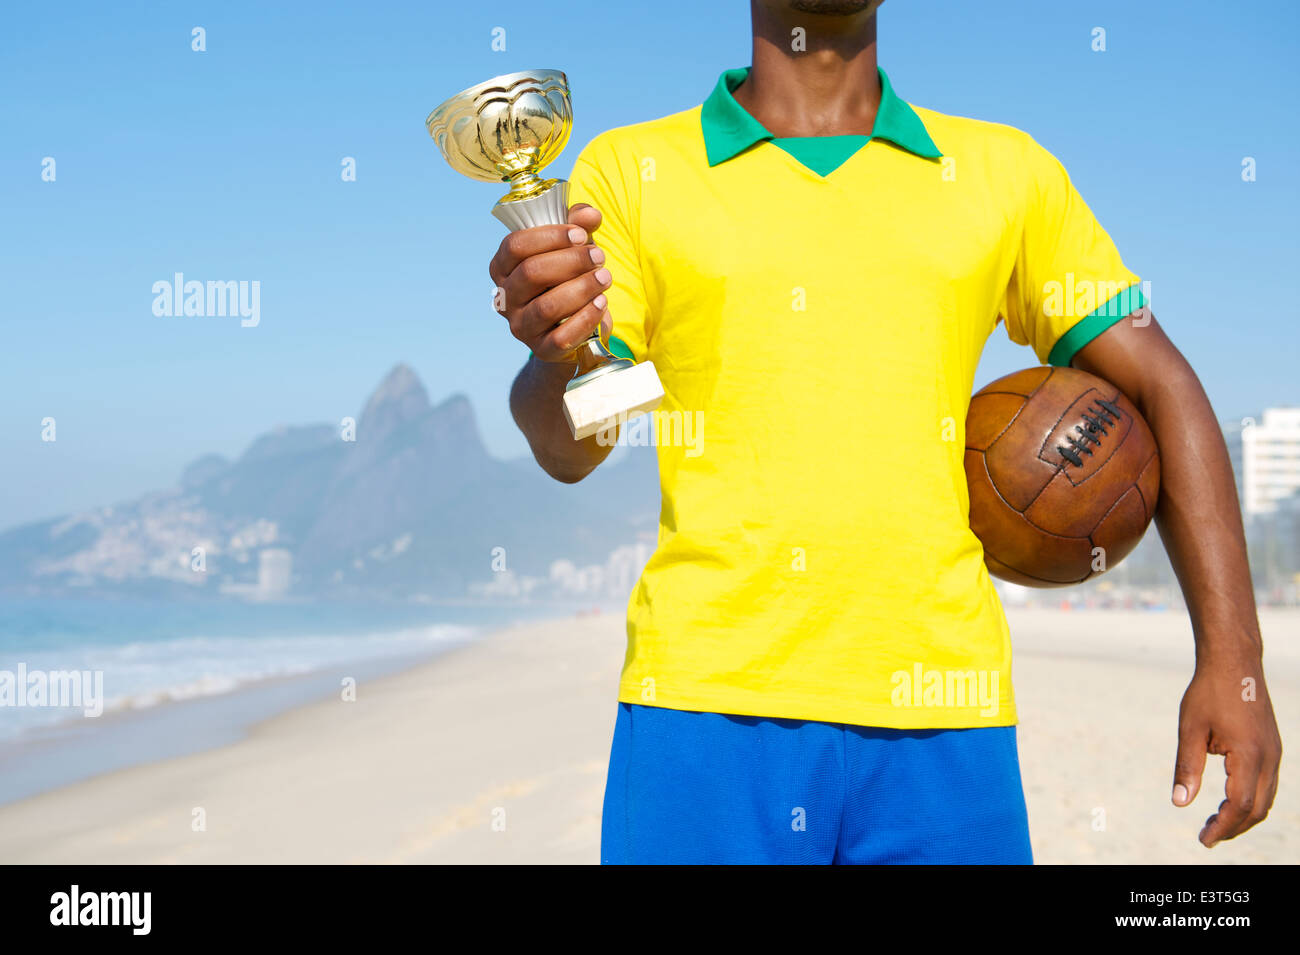 Champion de football brésilien holding trophy et vintage d'un ballon de football de plage d'Ipanema Rio de Janeiro Brésil Banque D'Images